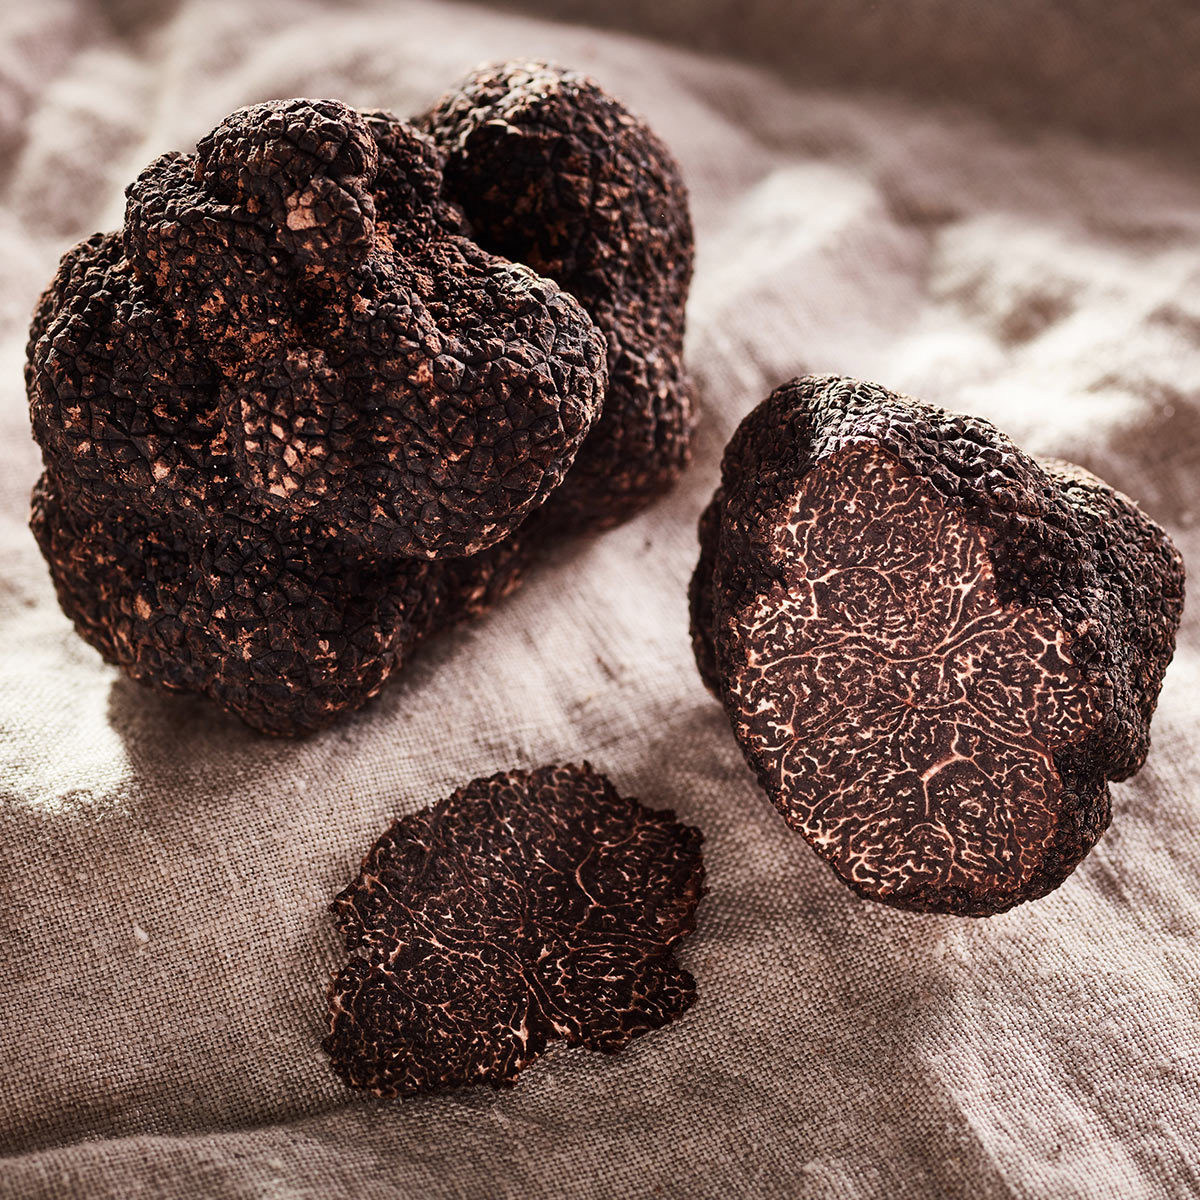 Truffle Hunter Fresh Black Winter Truffles (Tuber Melanosprum) in 3 Sizes